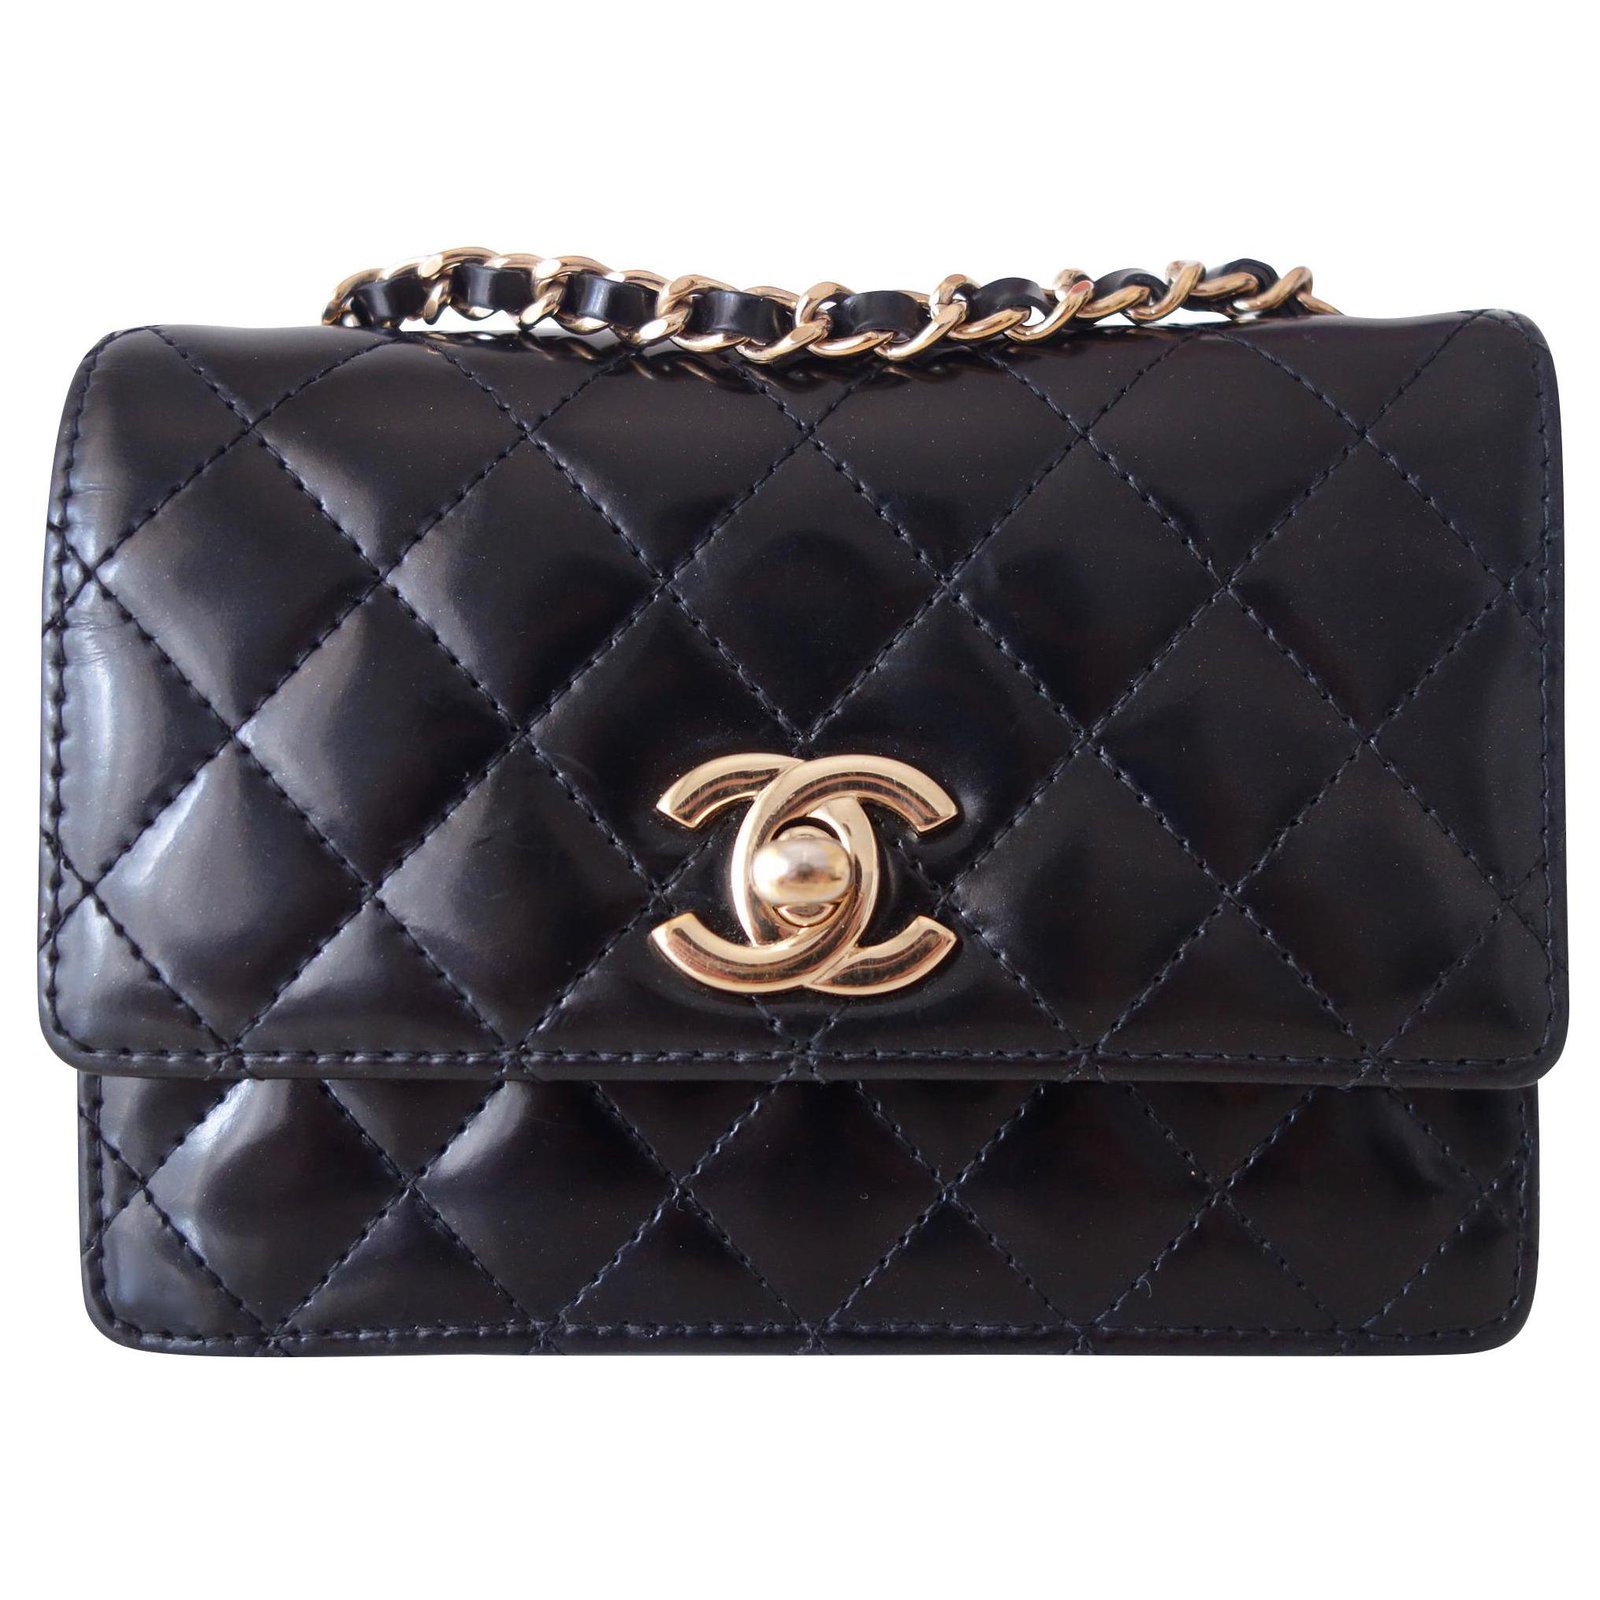 small chanel purse black